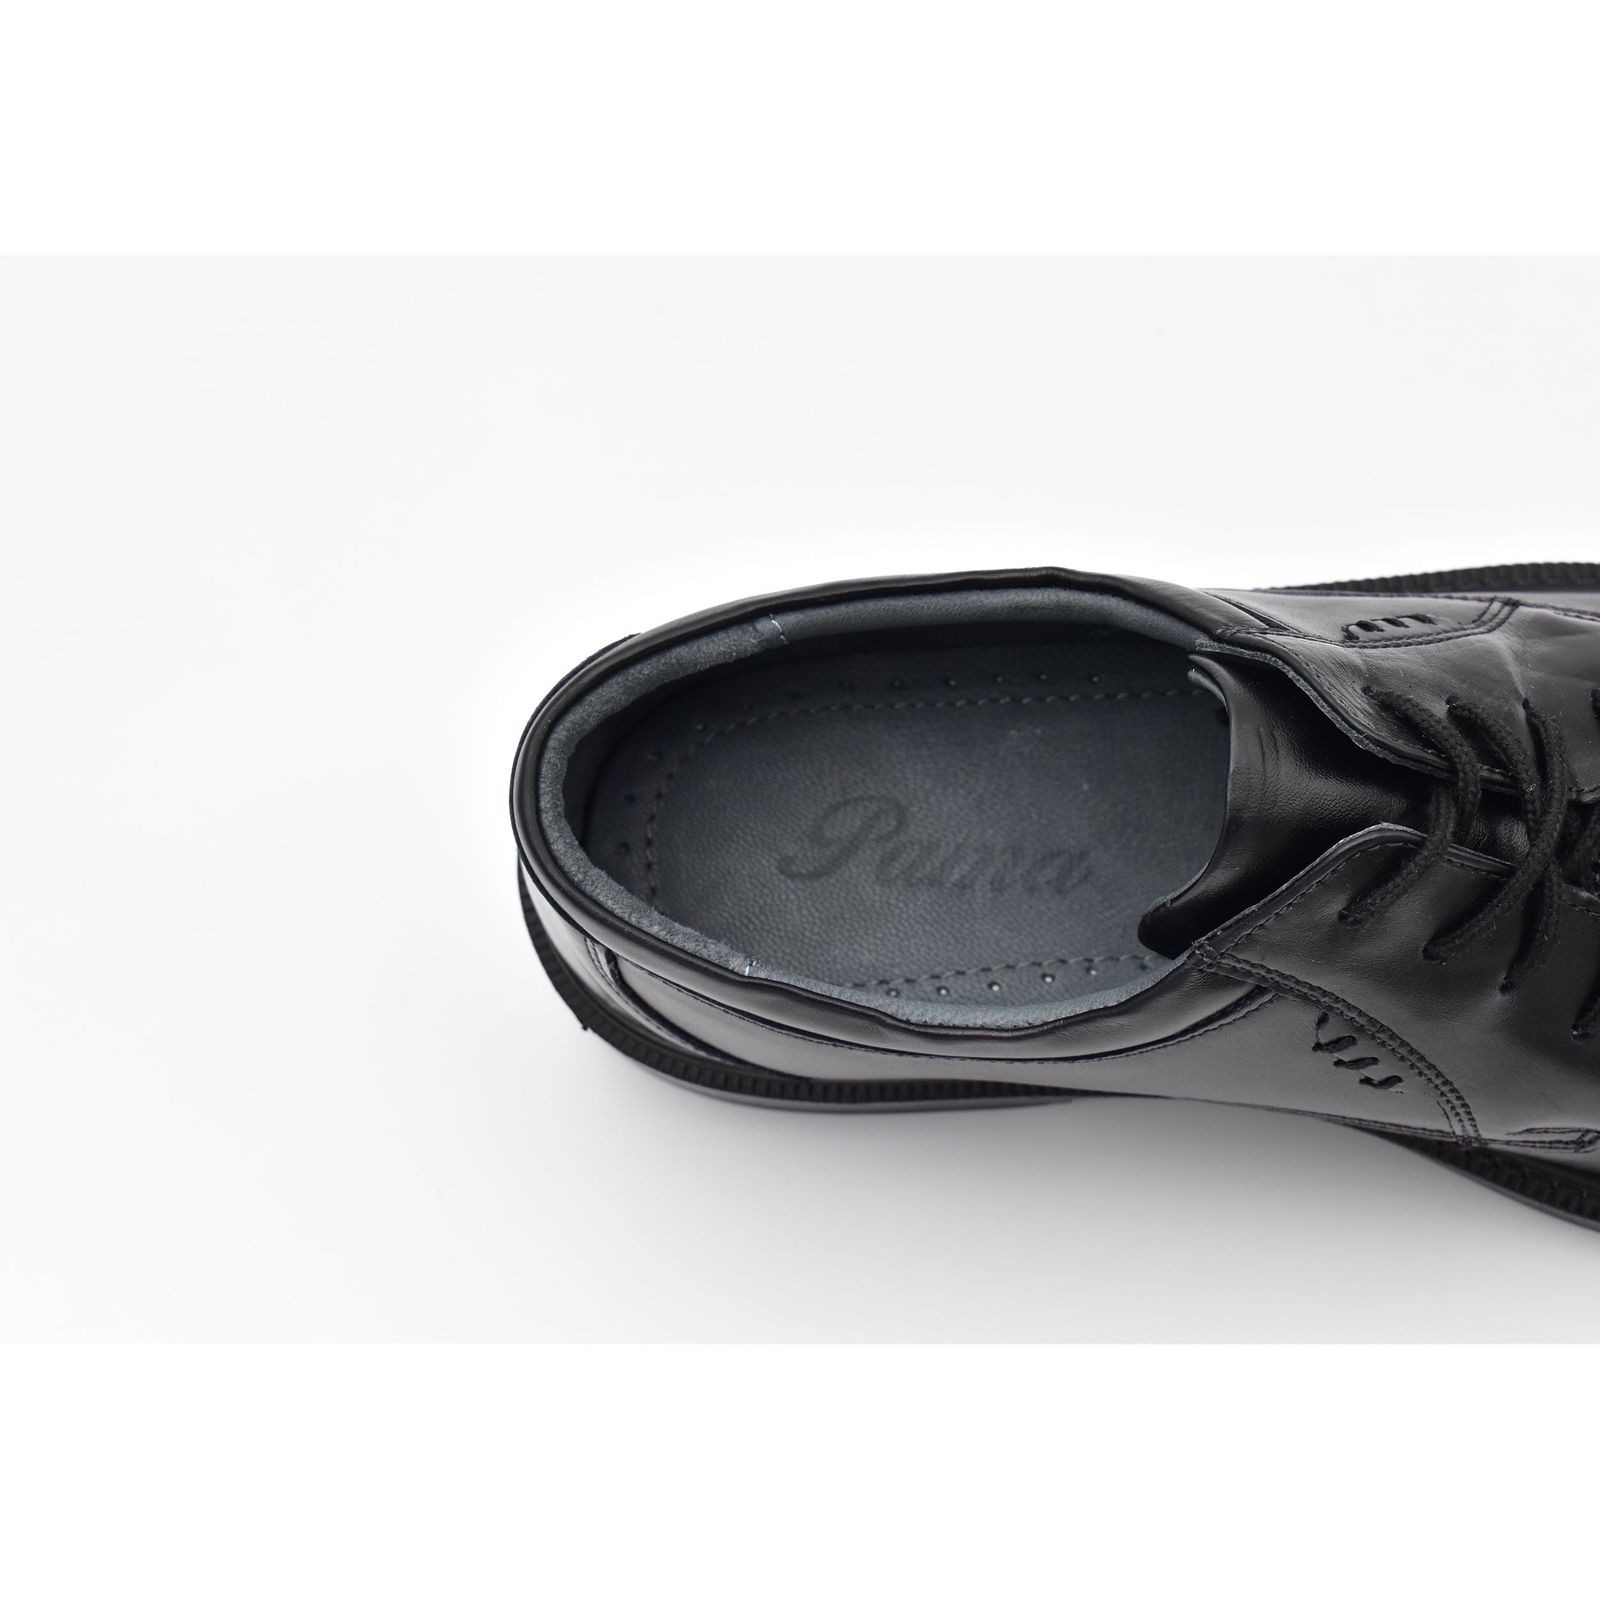 کفش مردانه پاما مدل TOE کد G1119 -  - 9